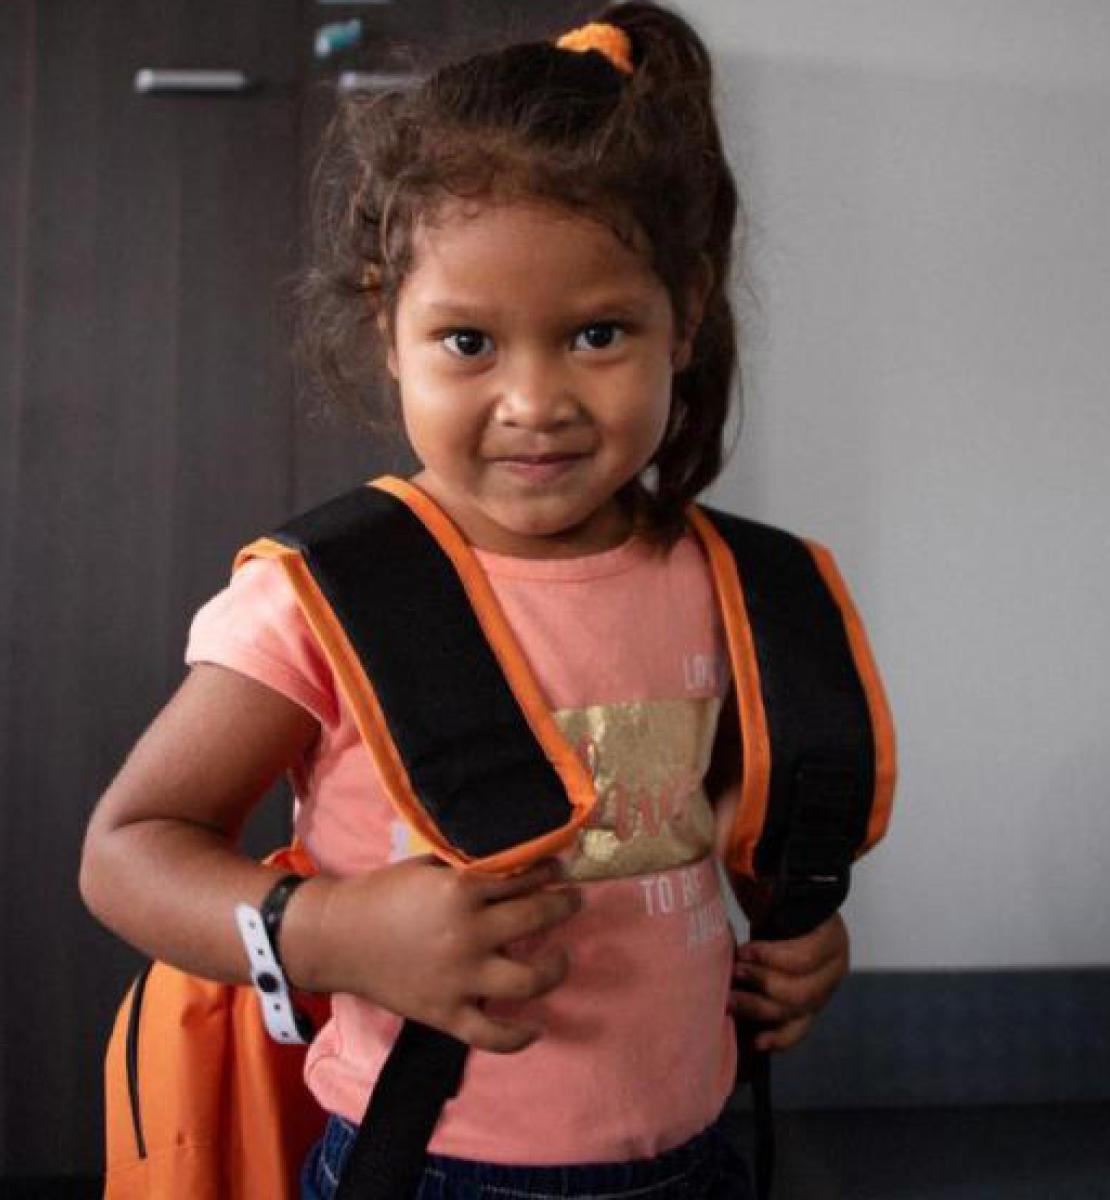 Une petite fille vénézuélienne portant un t-shirt couleur saumon et un sac à dos regarde la caméra en souriant.